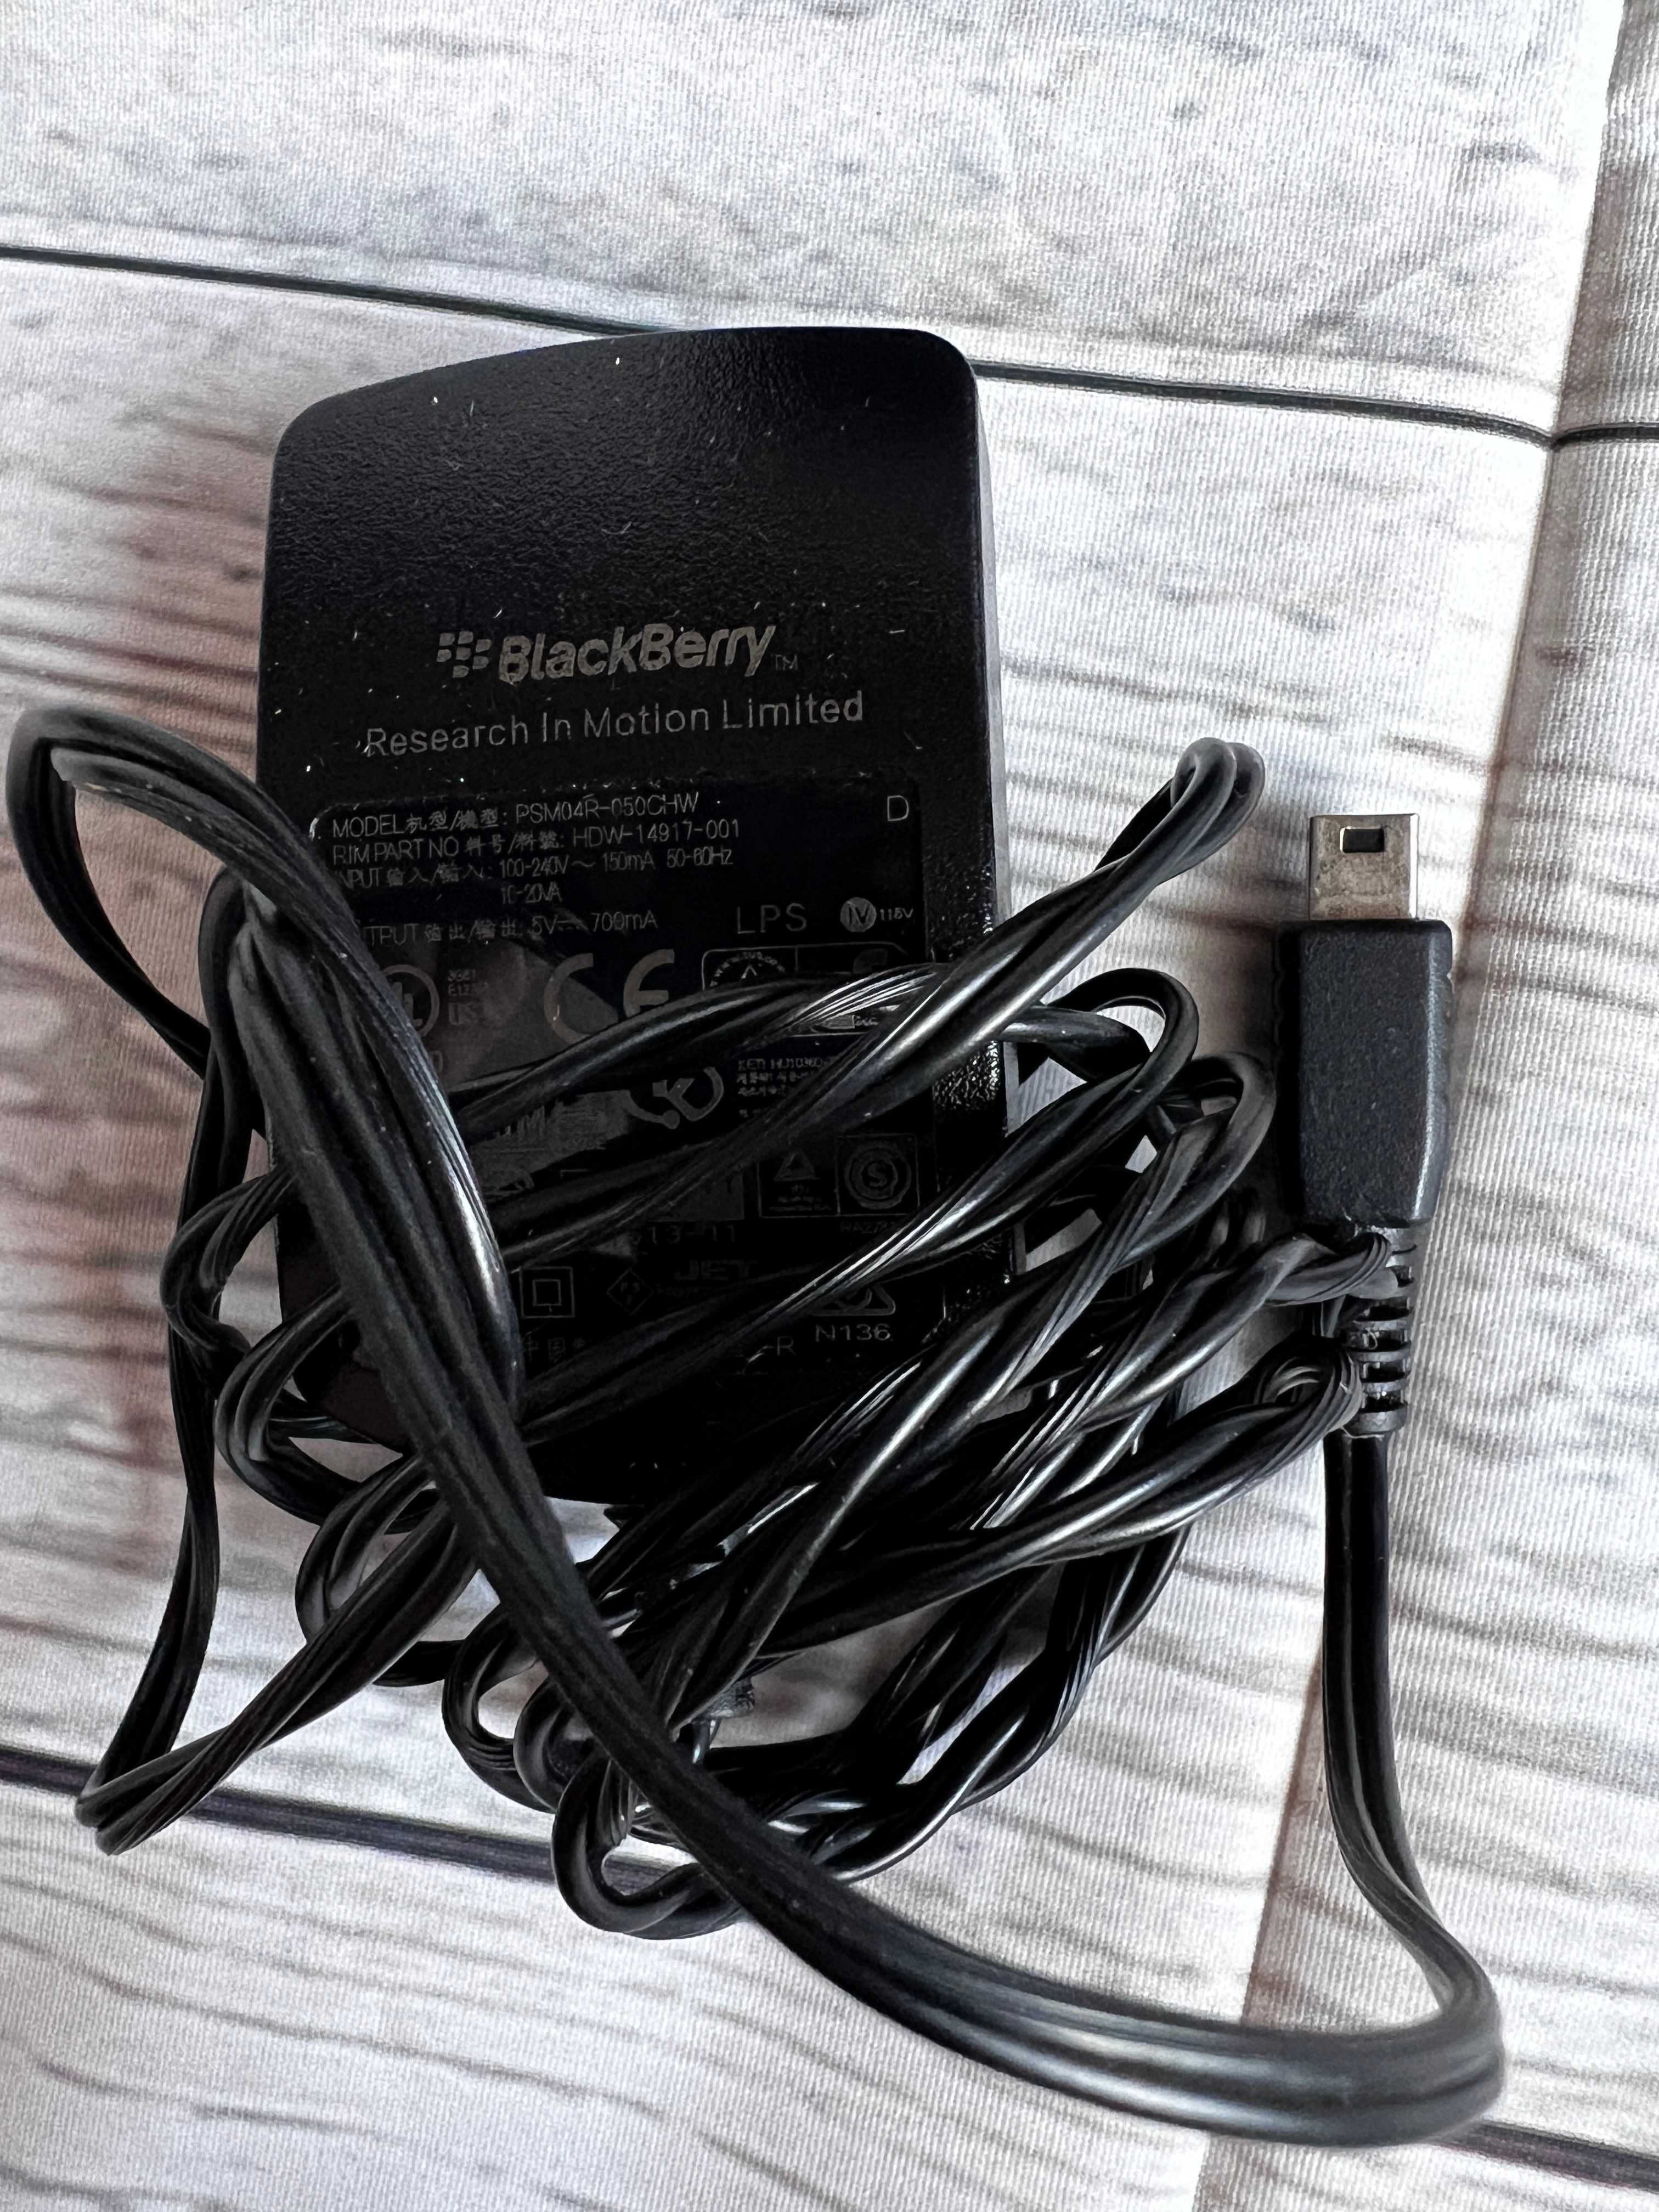 BlackBerry 8520 pudełko, kartonik + ładowarka + słuchawki + papiery+CD